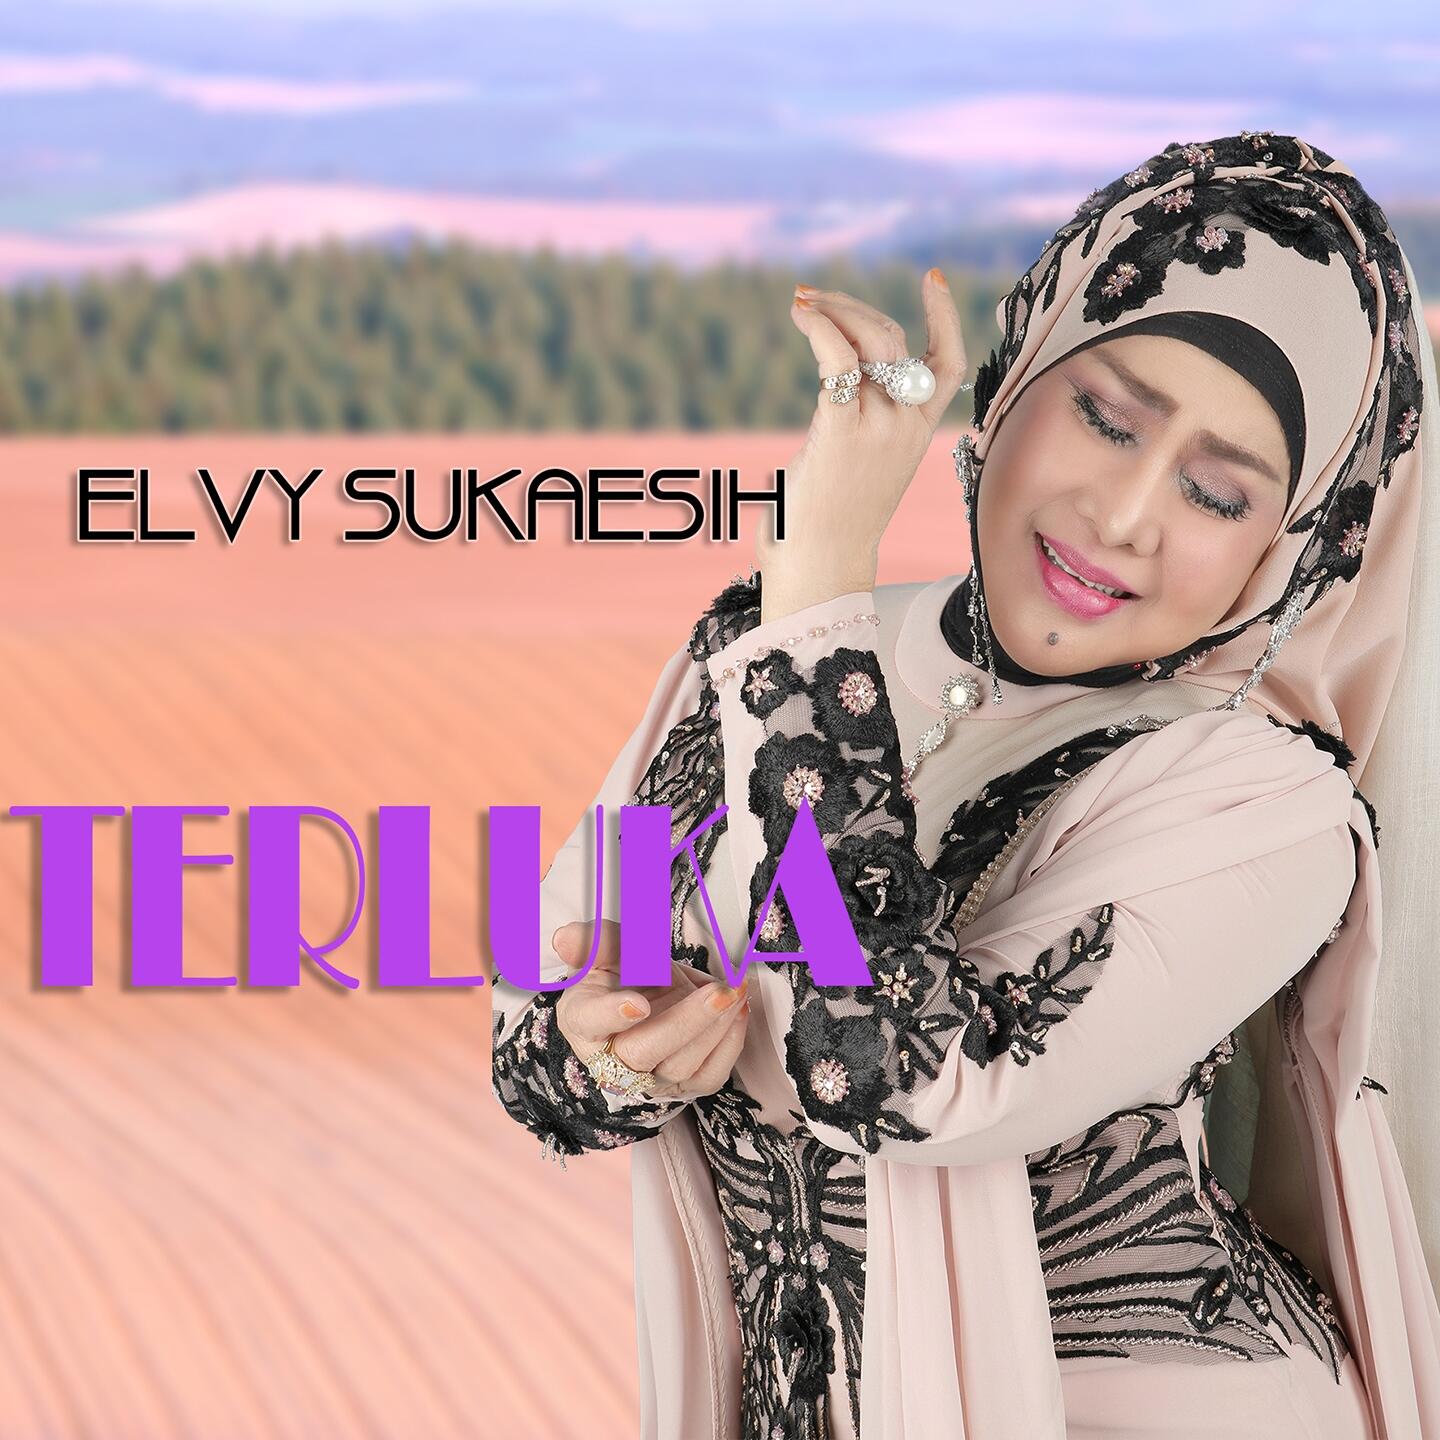 Listen Free to Elvy  Sukaesih Terluka Radio on 